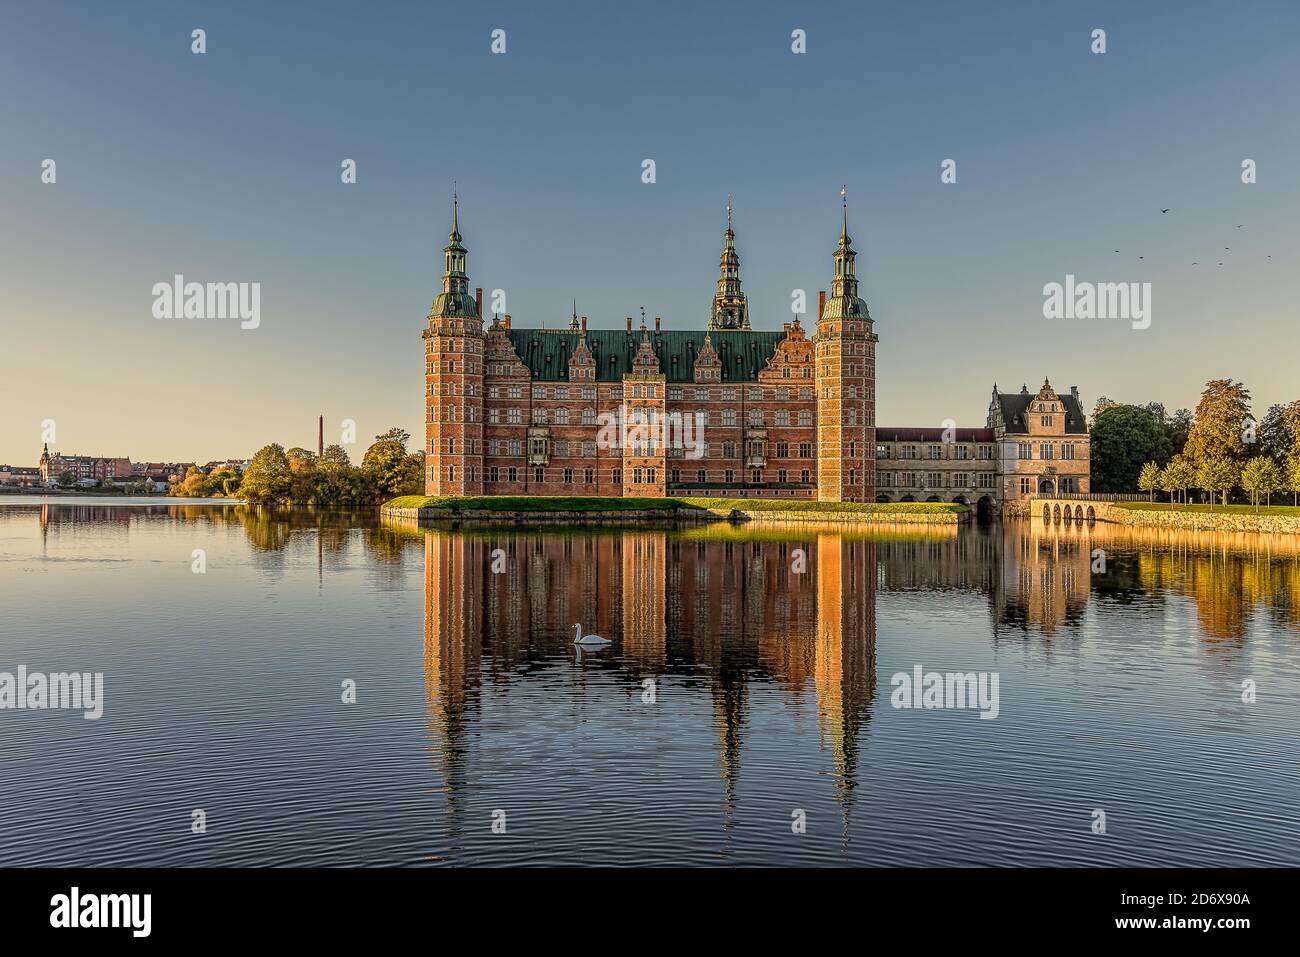 Le château royal de Frederiksborg brille au soleil et se reflète dans le lac avec un cygne de natation, Hillerod, Danemark, 17 octobre 2020 Banque D'Images